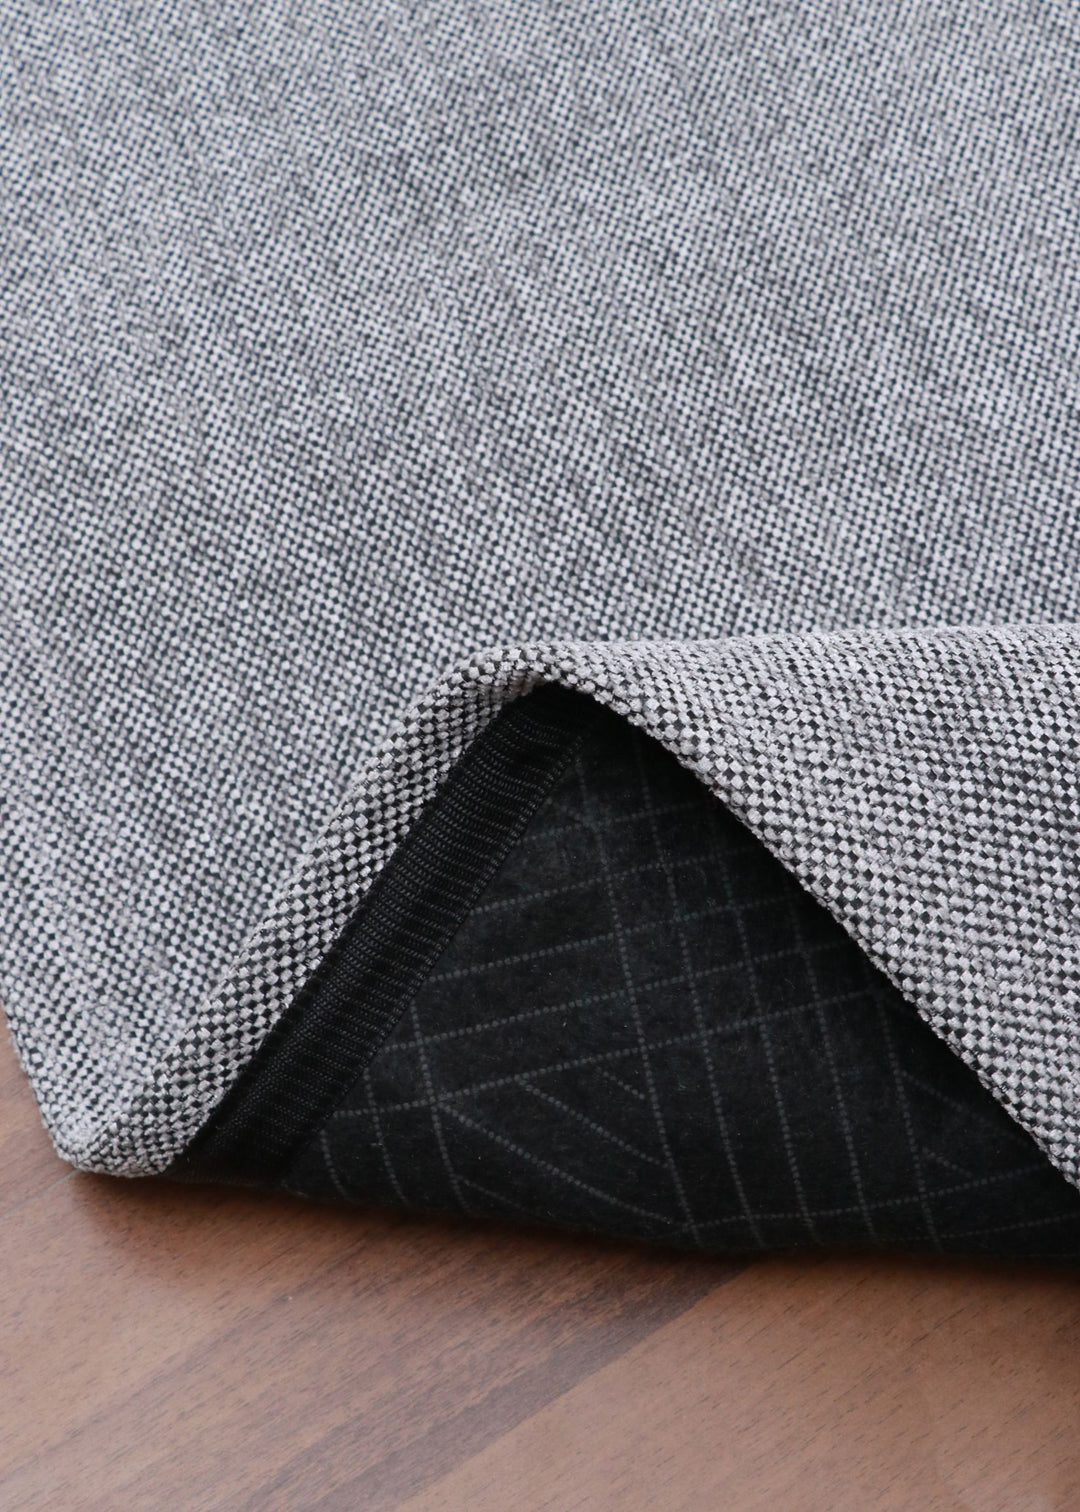 Gray & Black Plain Weave Rug